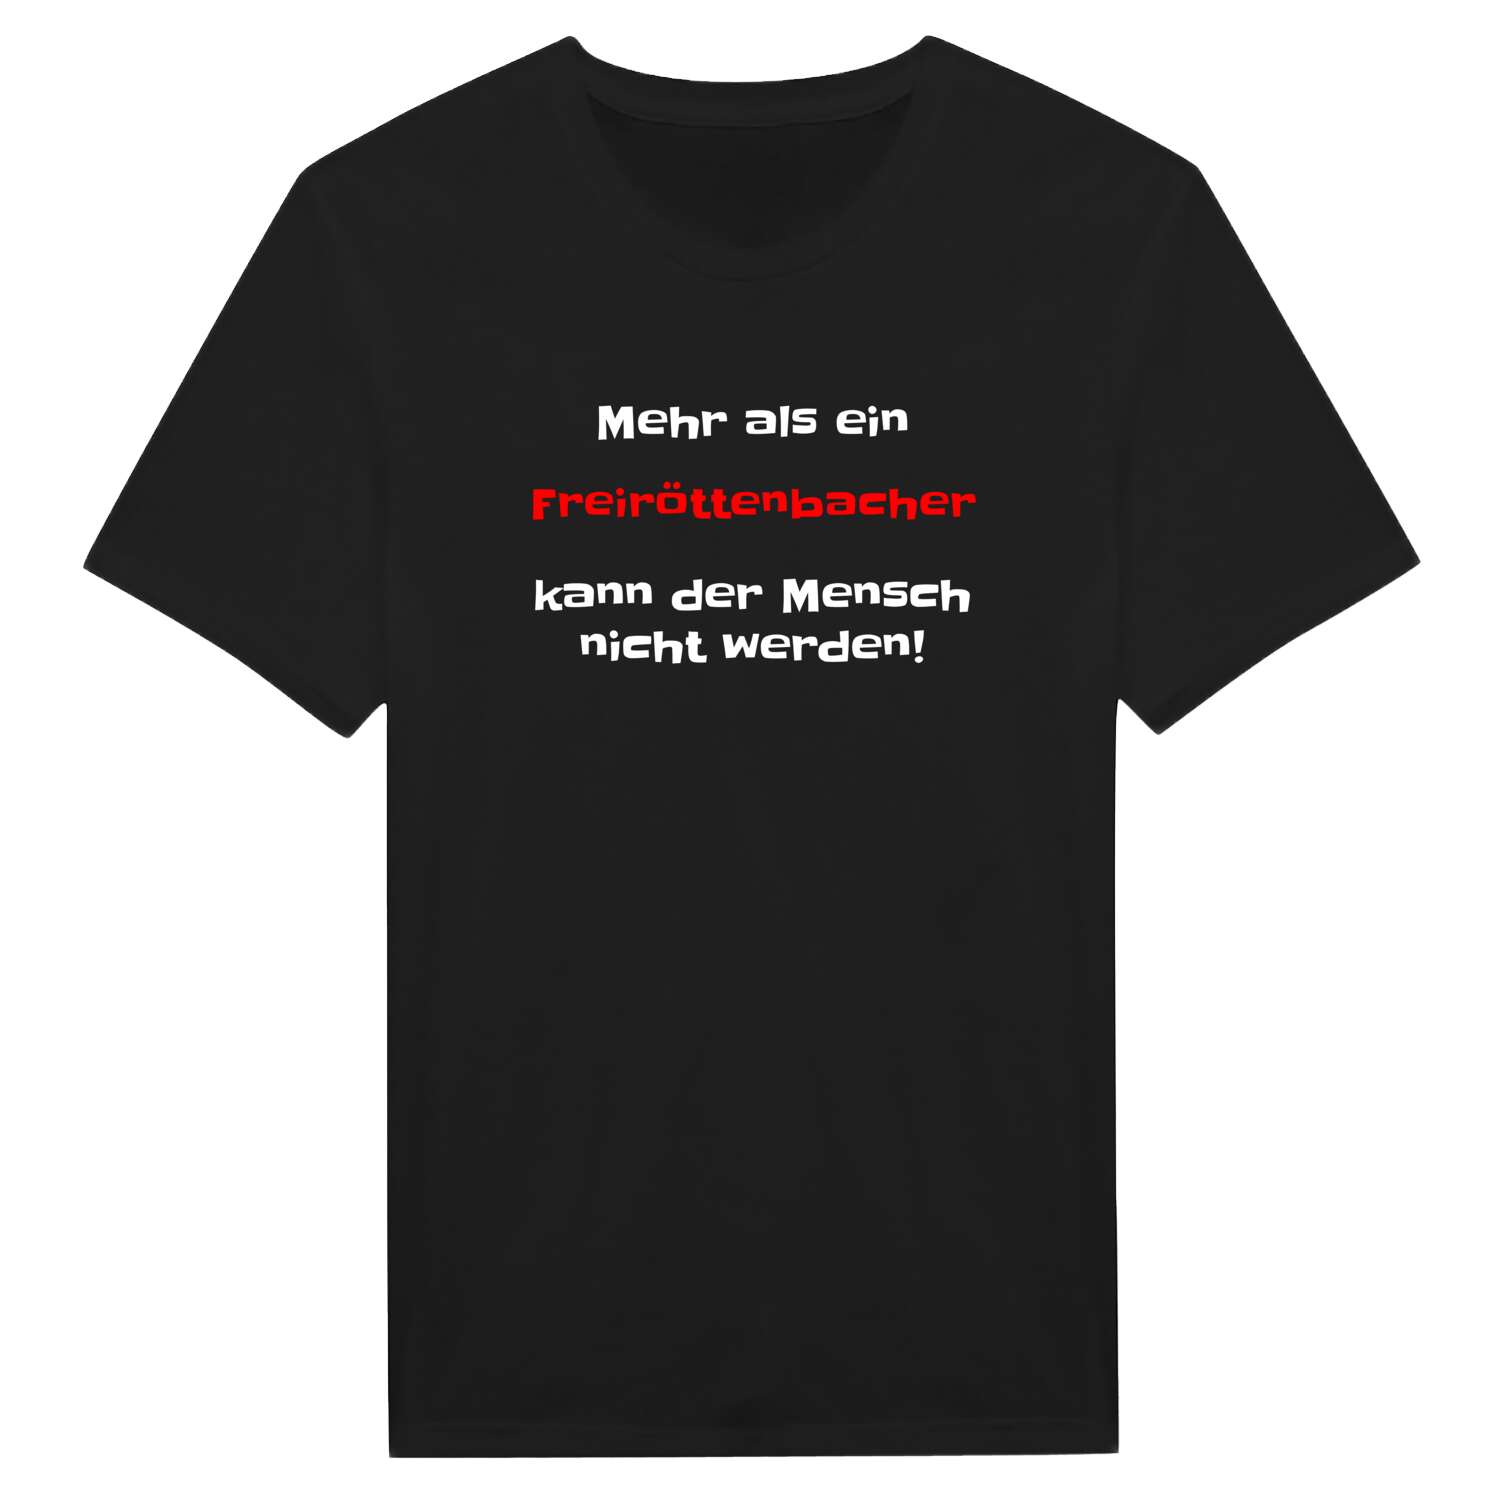 Freiröttenbach T-Shirt »Mehr als ein«